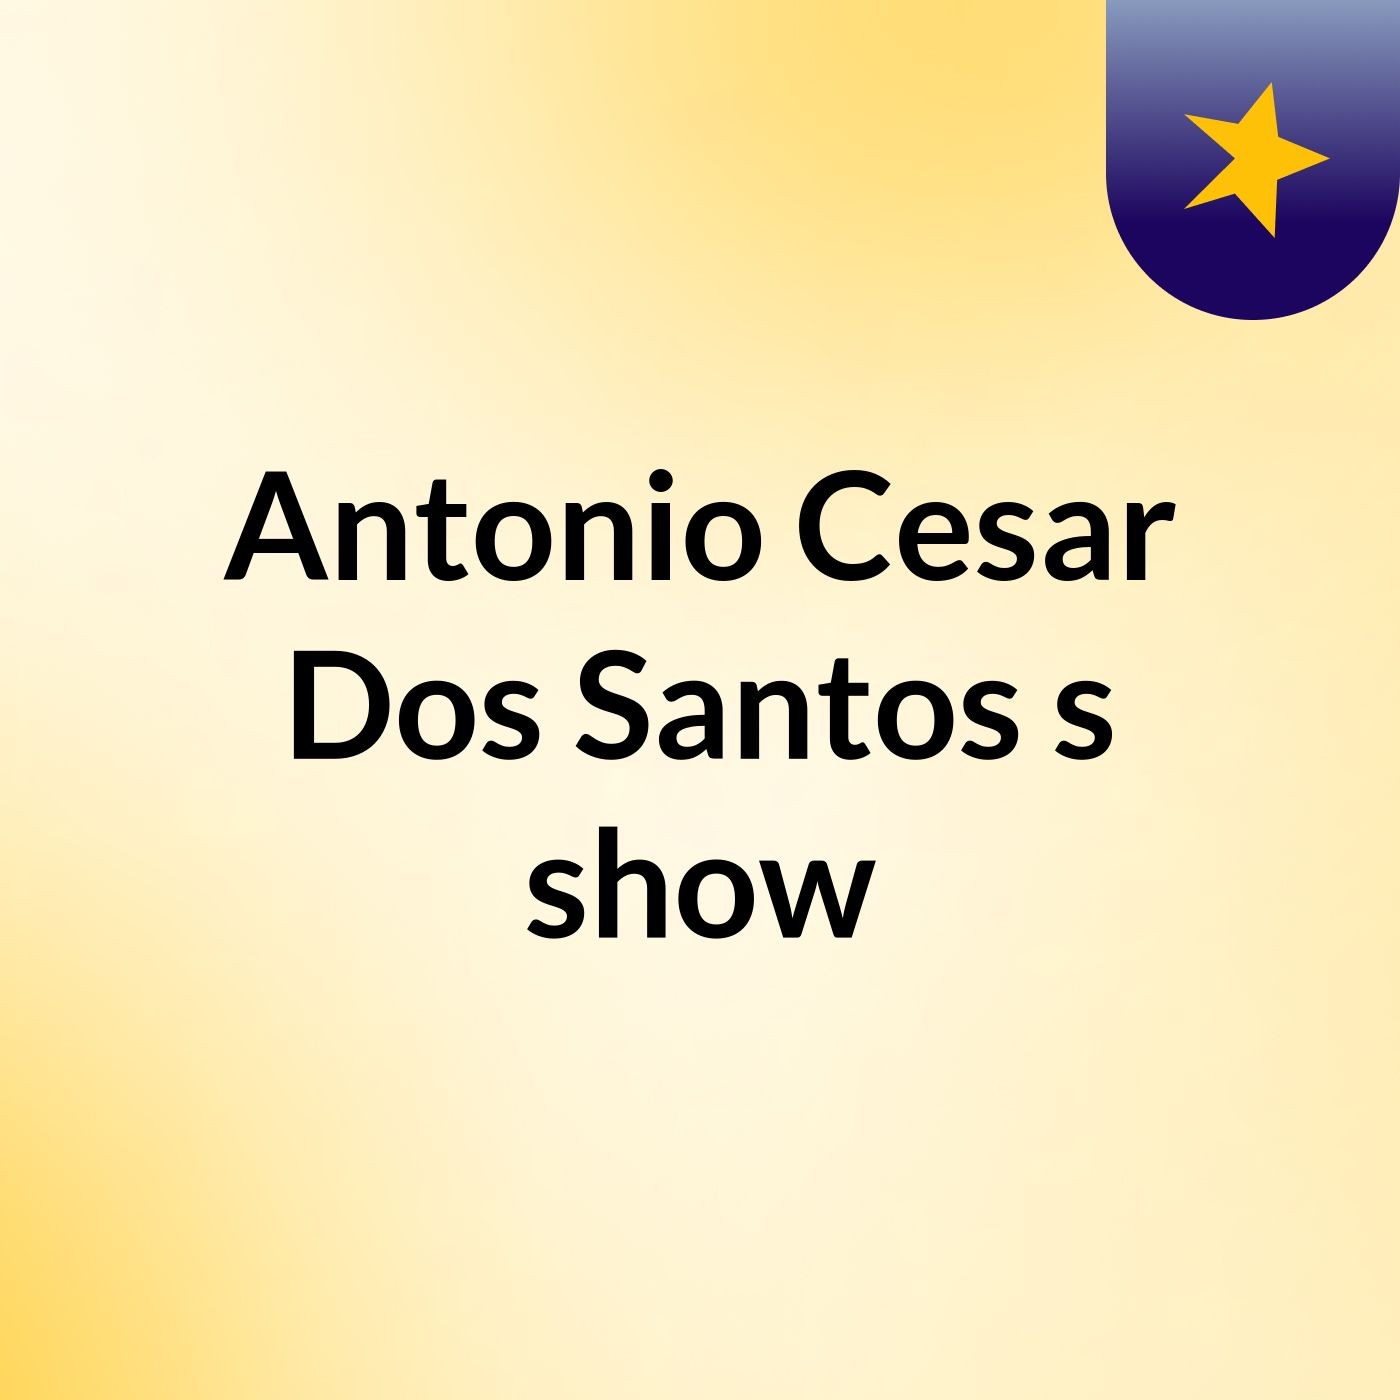 Antonio Cesar Dos Santos's show